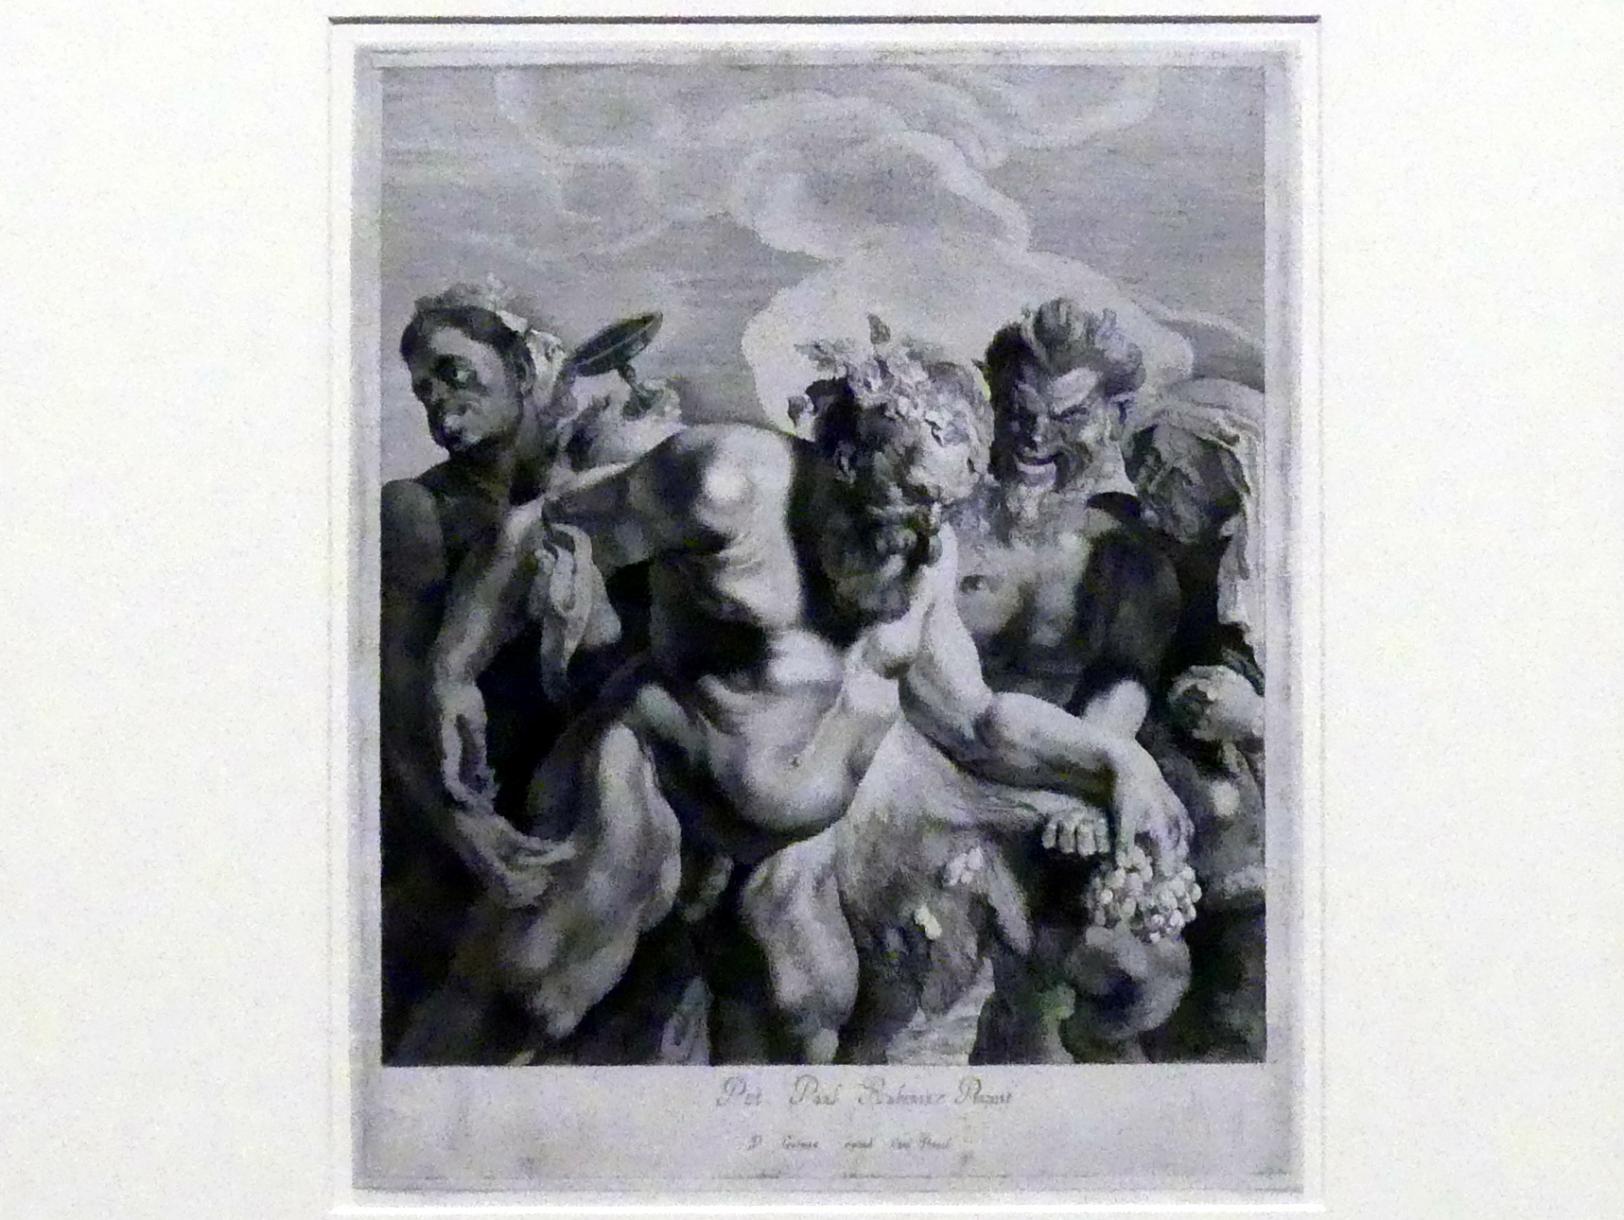 Pieter Claesz. Soutman (1620–1642), Der trunkene Silen, 2. Zustand, München, Alte Pinakothek, Ausstellung "Van Dyck" vom 25.10.2019-02.02.2020, Die Anfänge - 1, um 1642, Bild 1/3